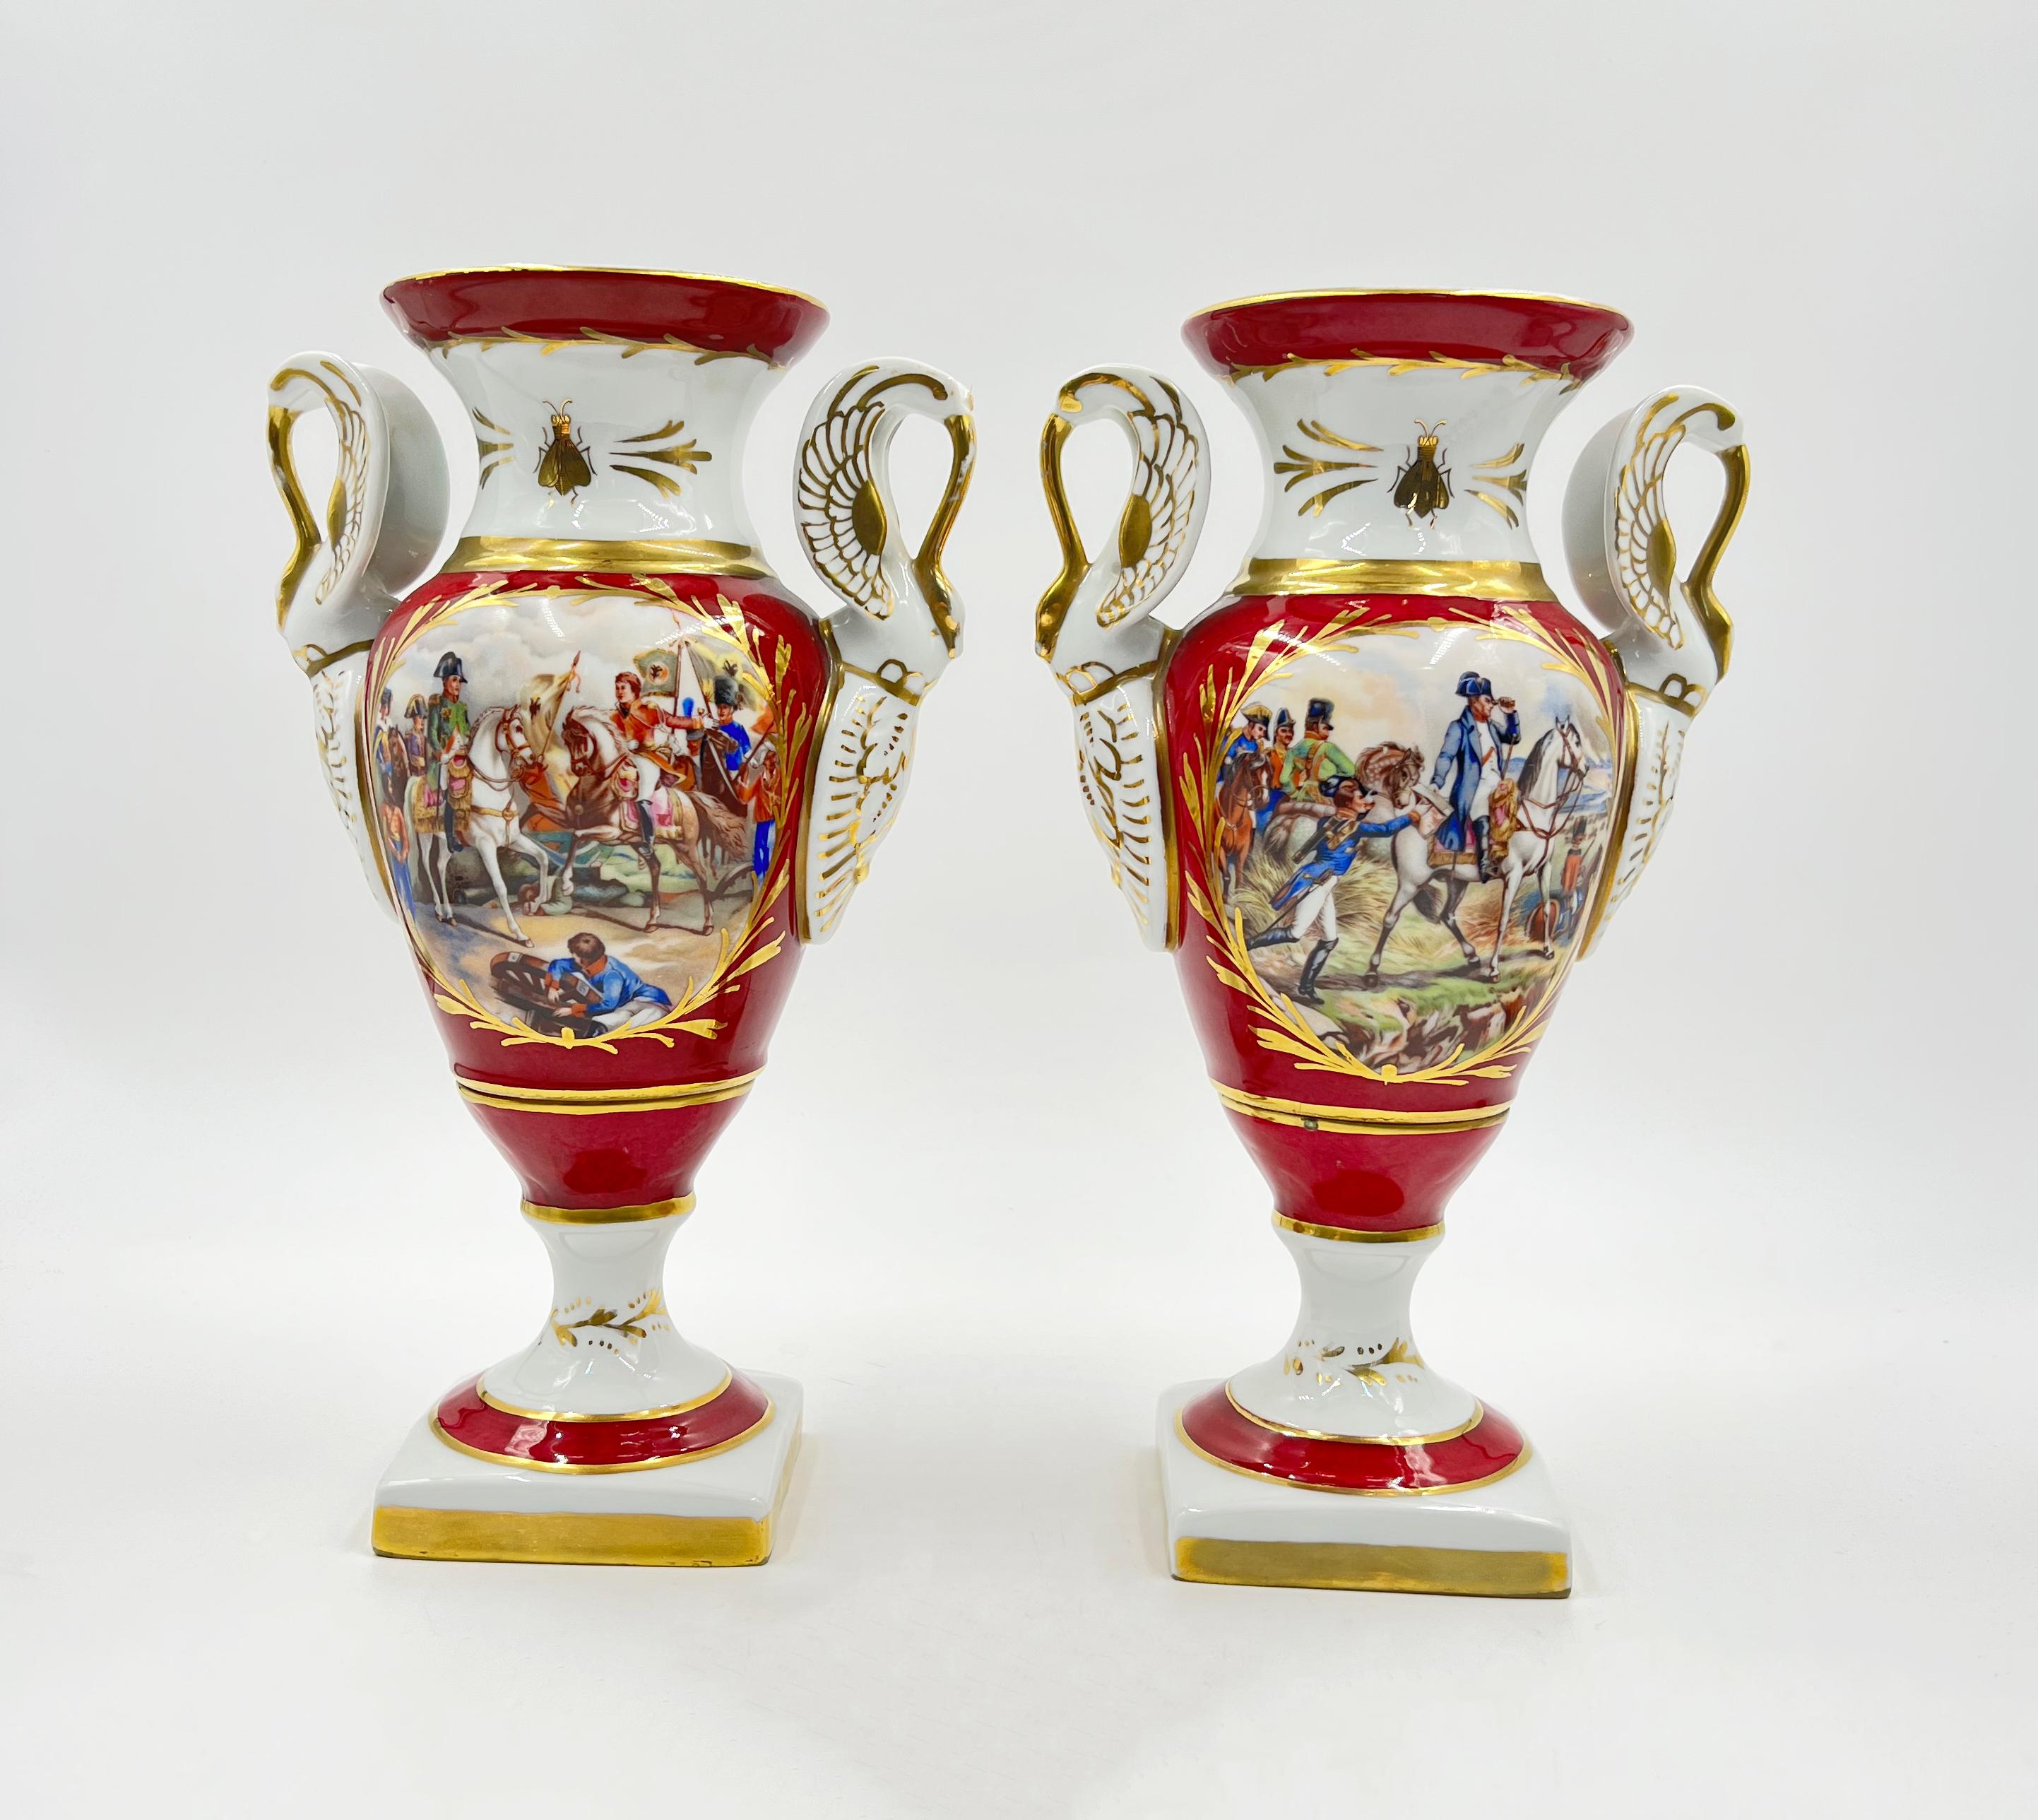 Paire de vases anciens en porcelaine française, le devant des vases est peint à la main avec des scènes de bataille, tandis que le revers est décoré d'aigles dorés, les côtés sont décorés d'anses en forme de cygne et reposent sur une base